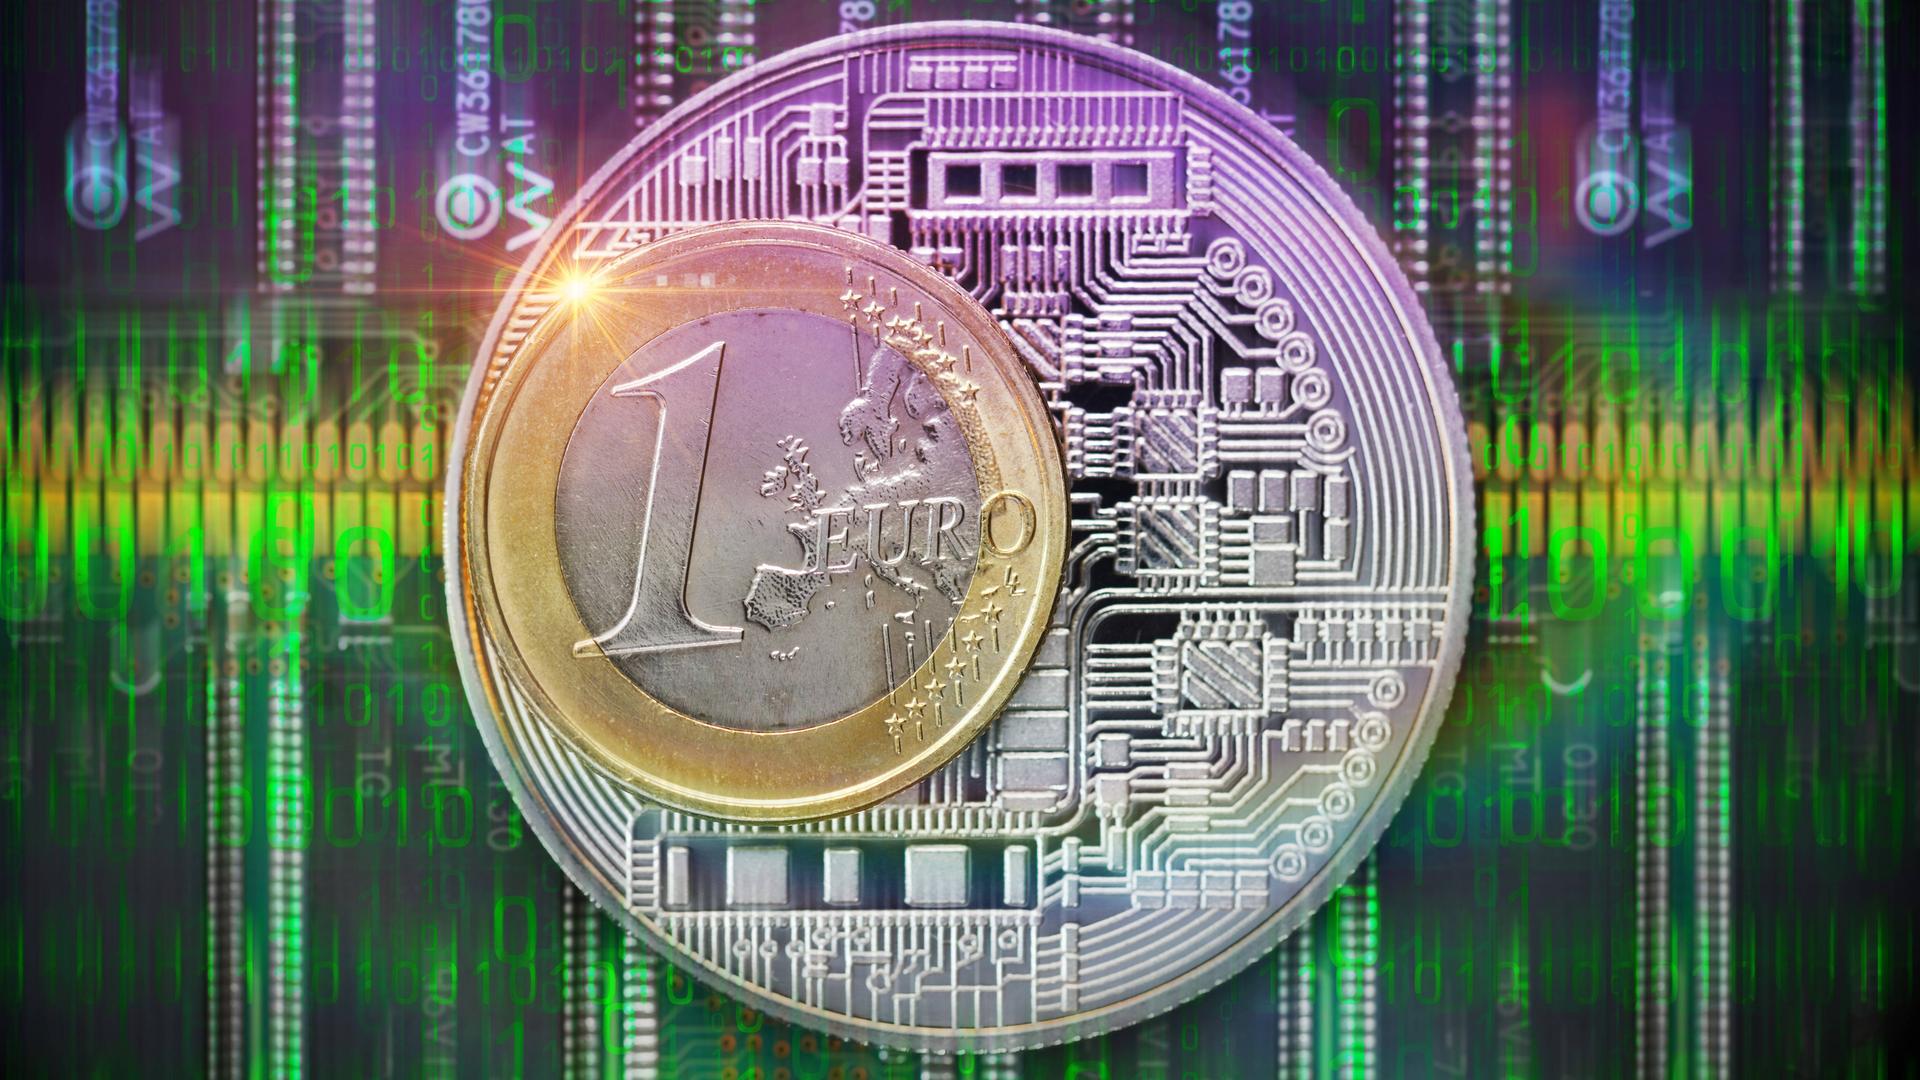 Eine Fotomontage zeigt eine Ein-Euro-Münze vor einer Darstellung von Binärcode, die an den Film "Matrix erinnert"